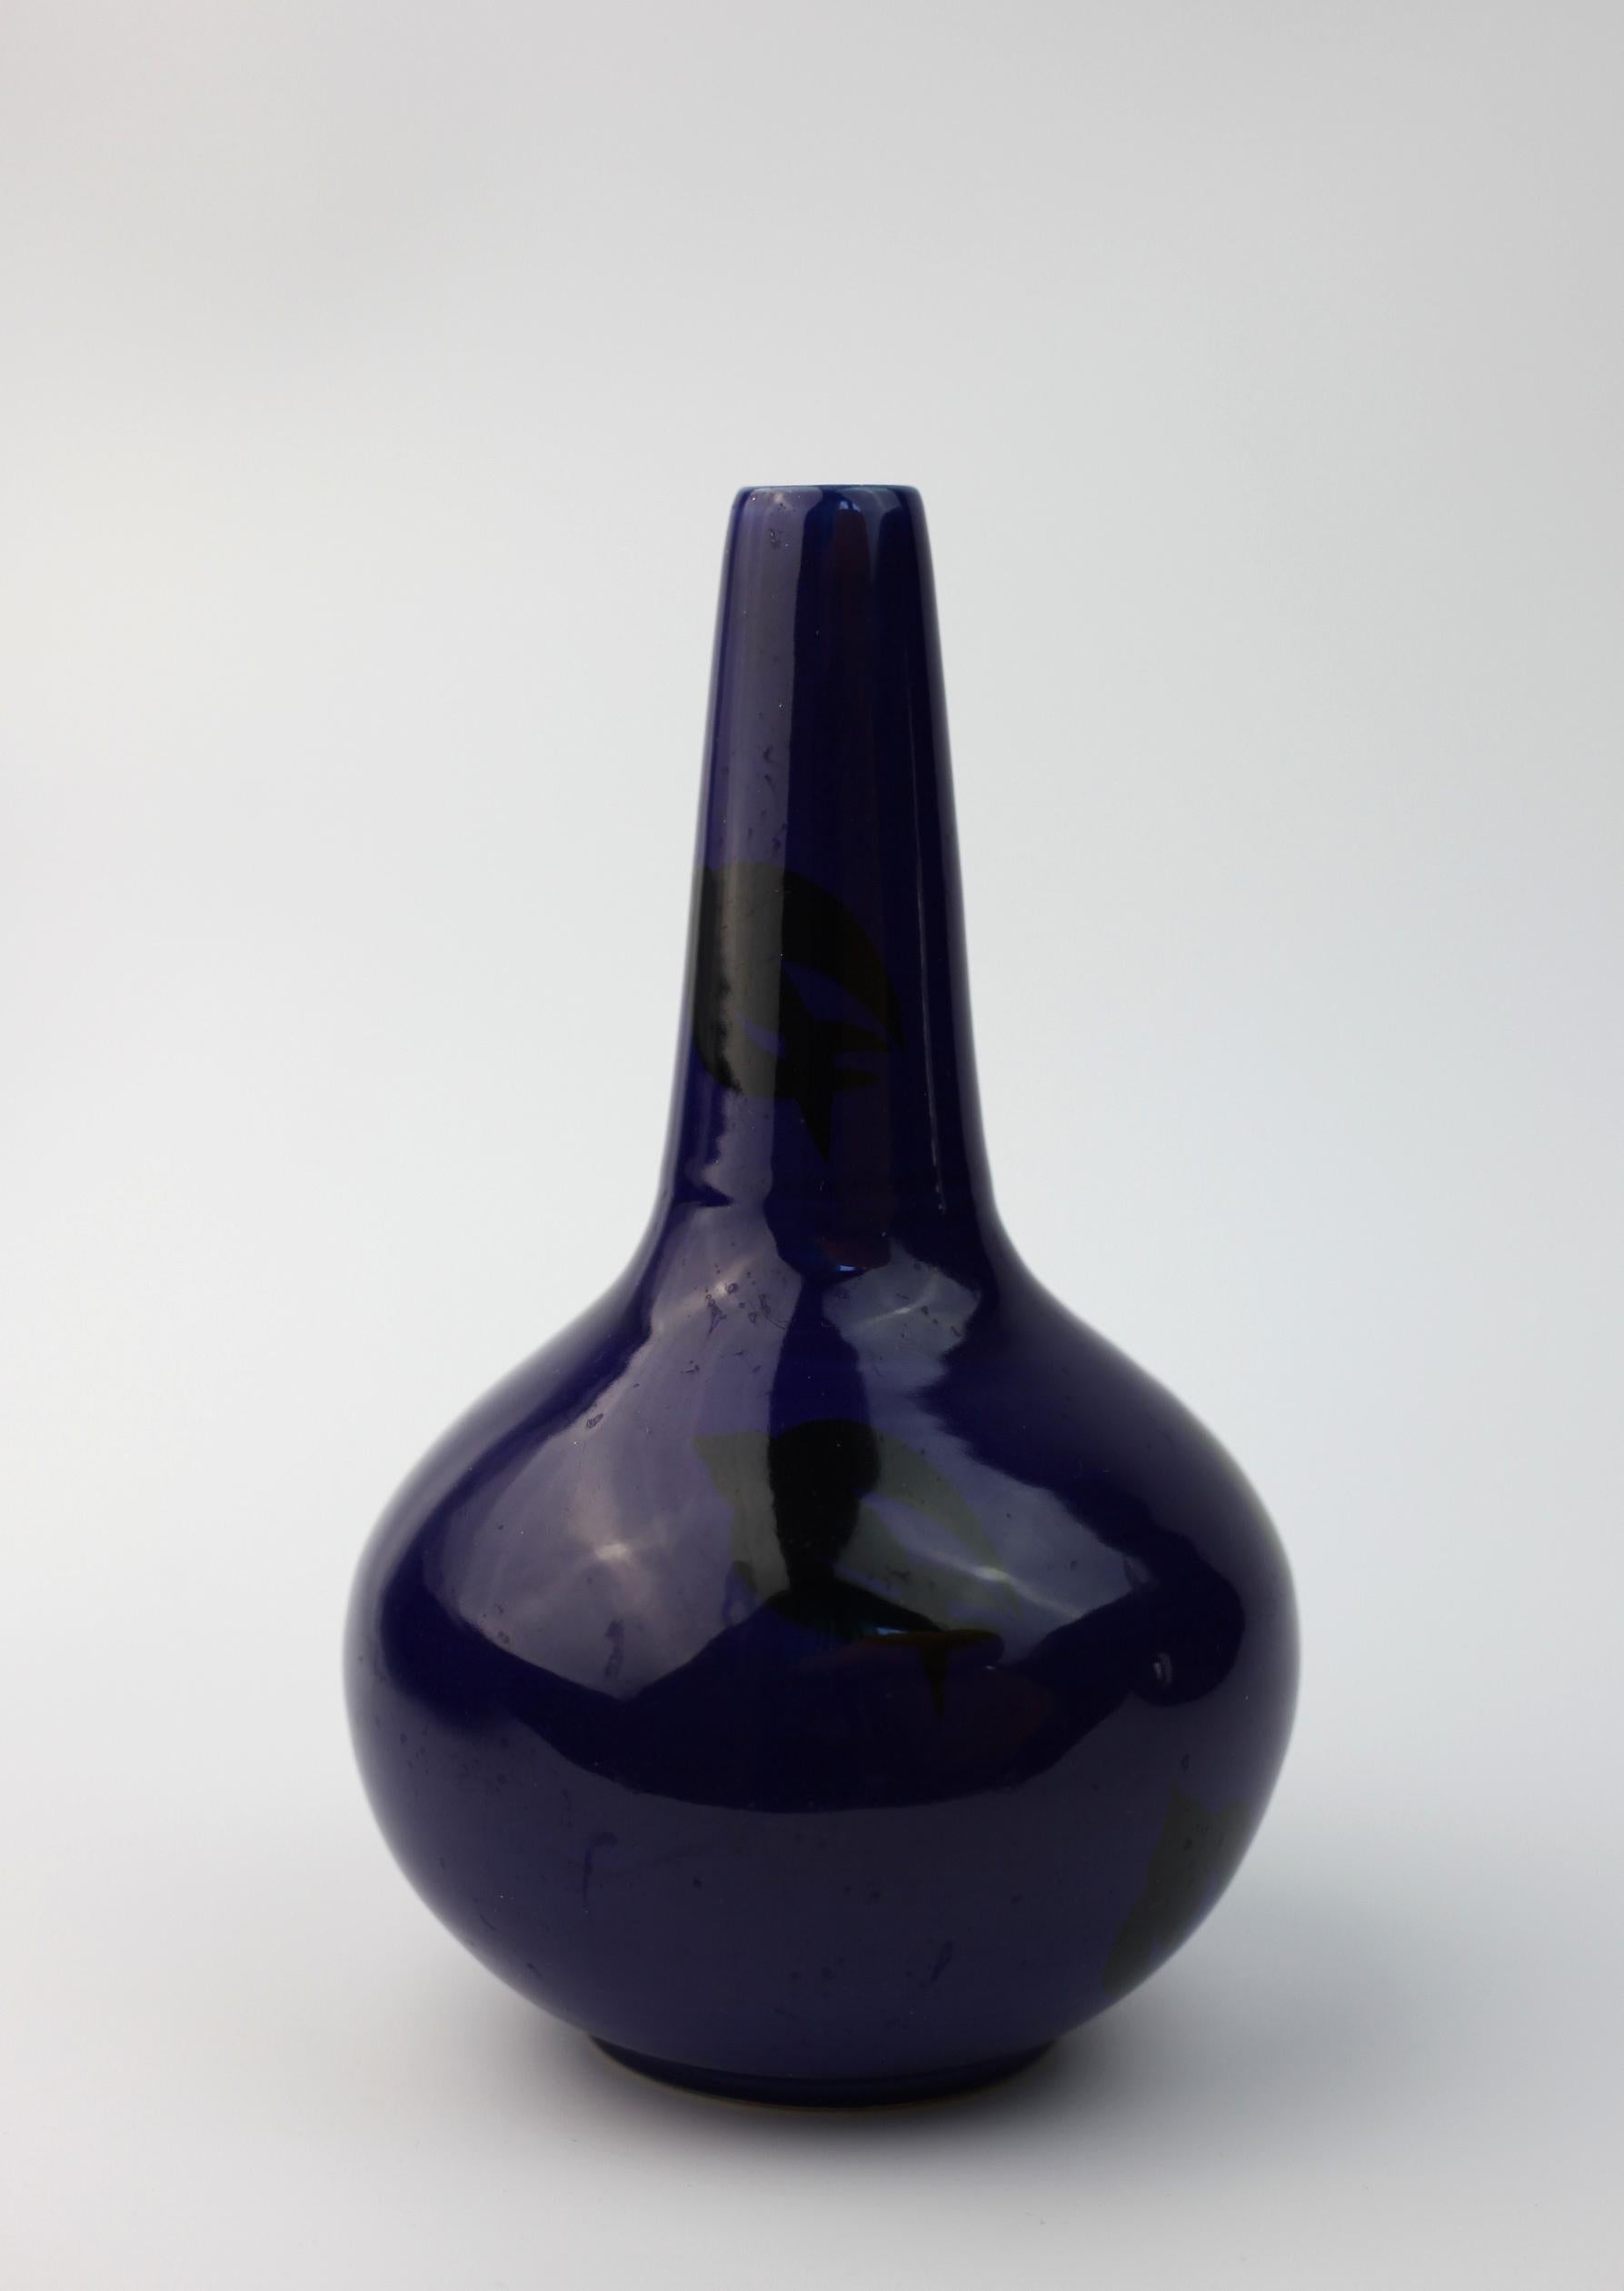 Dies ist eine atemberaubende blaue Vase mit 4 Vögeln darauf. 

Es ist aus Schweden. 

Die Vase hat einige kleine Fehler und eine kleine Fehlbrennung   auf der Rückseite. 



